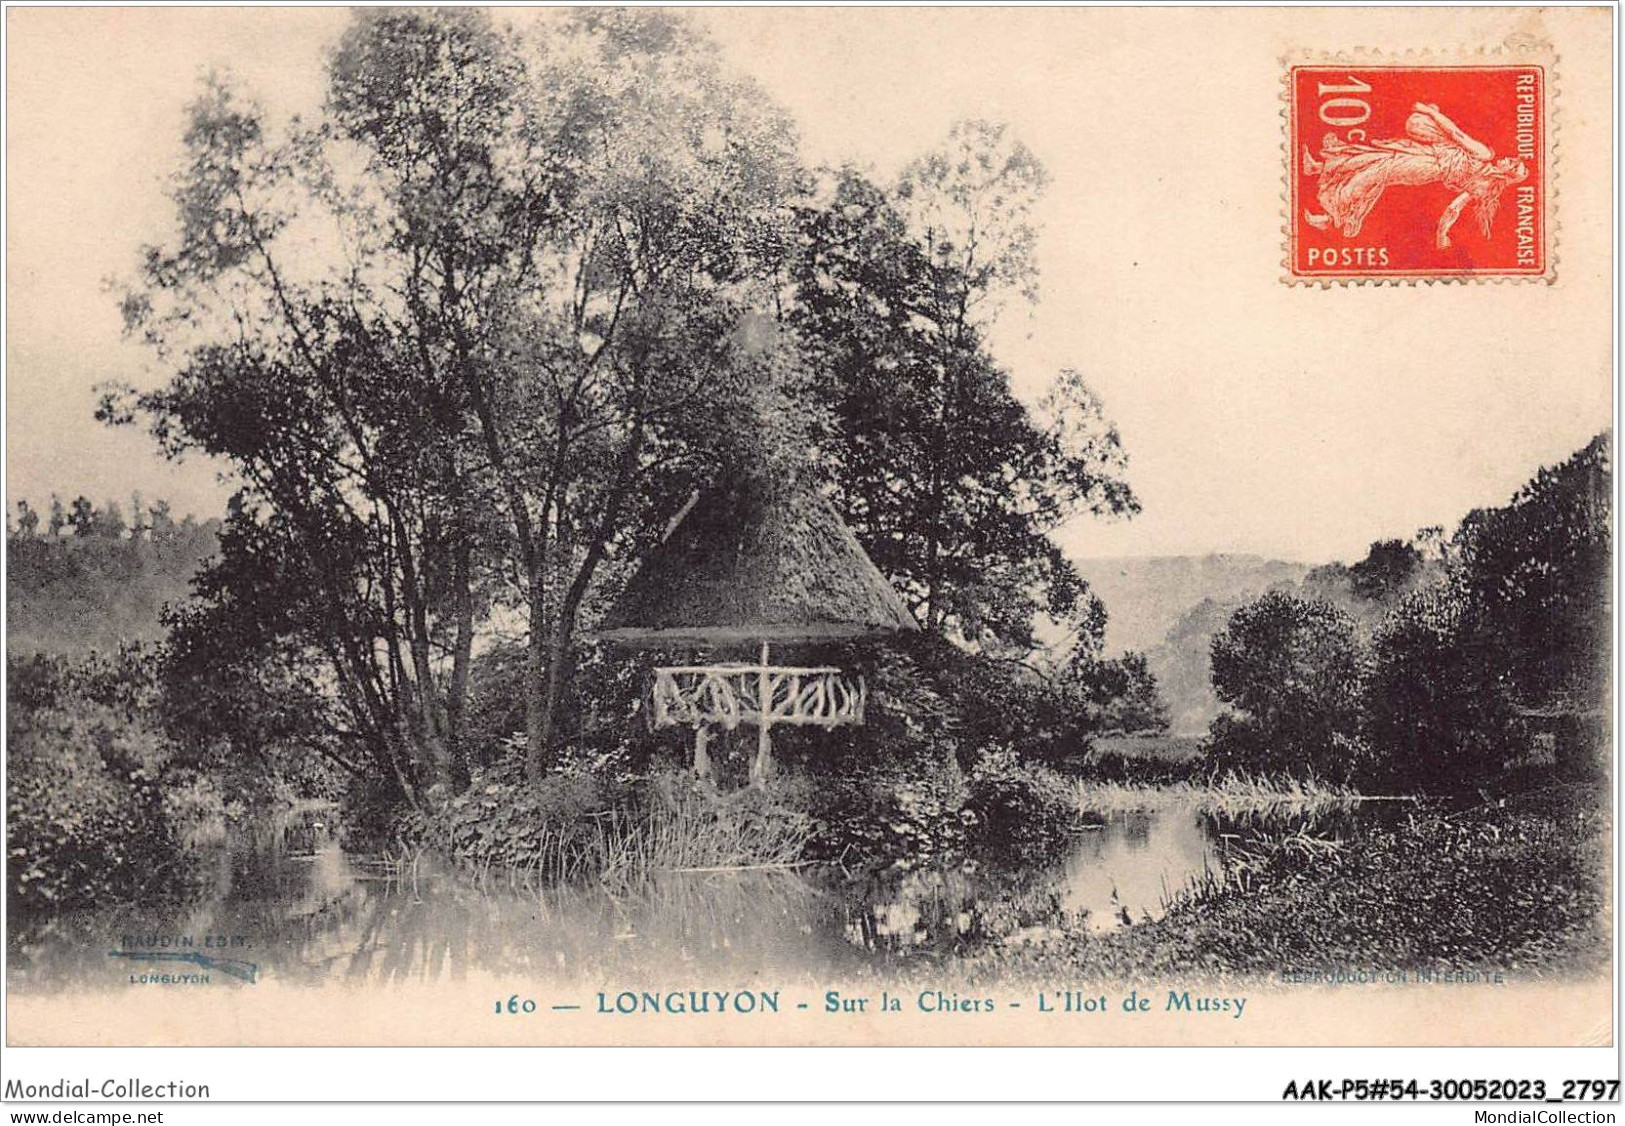 AAKP5-54-0424 - LONGUYON - Sur Les Chiers - L'ilot De Mussy - Longuyon